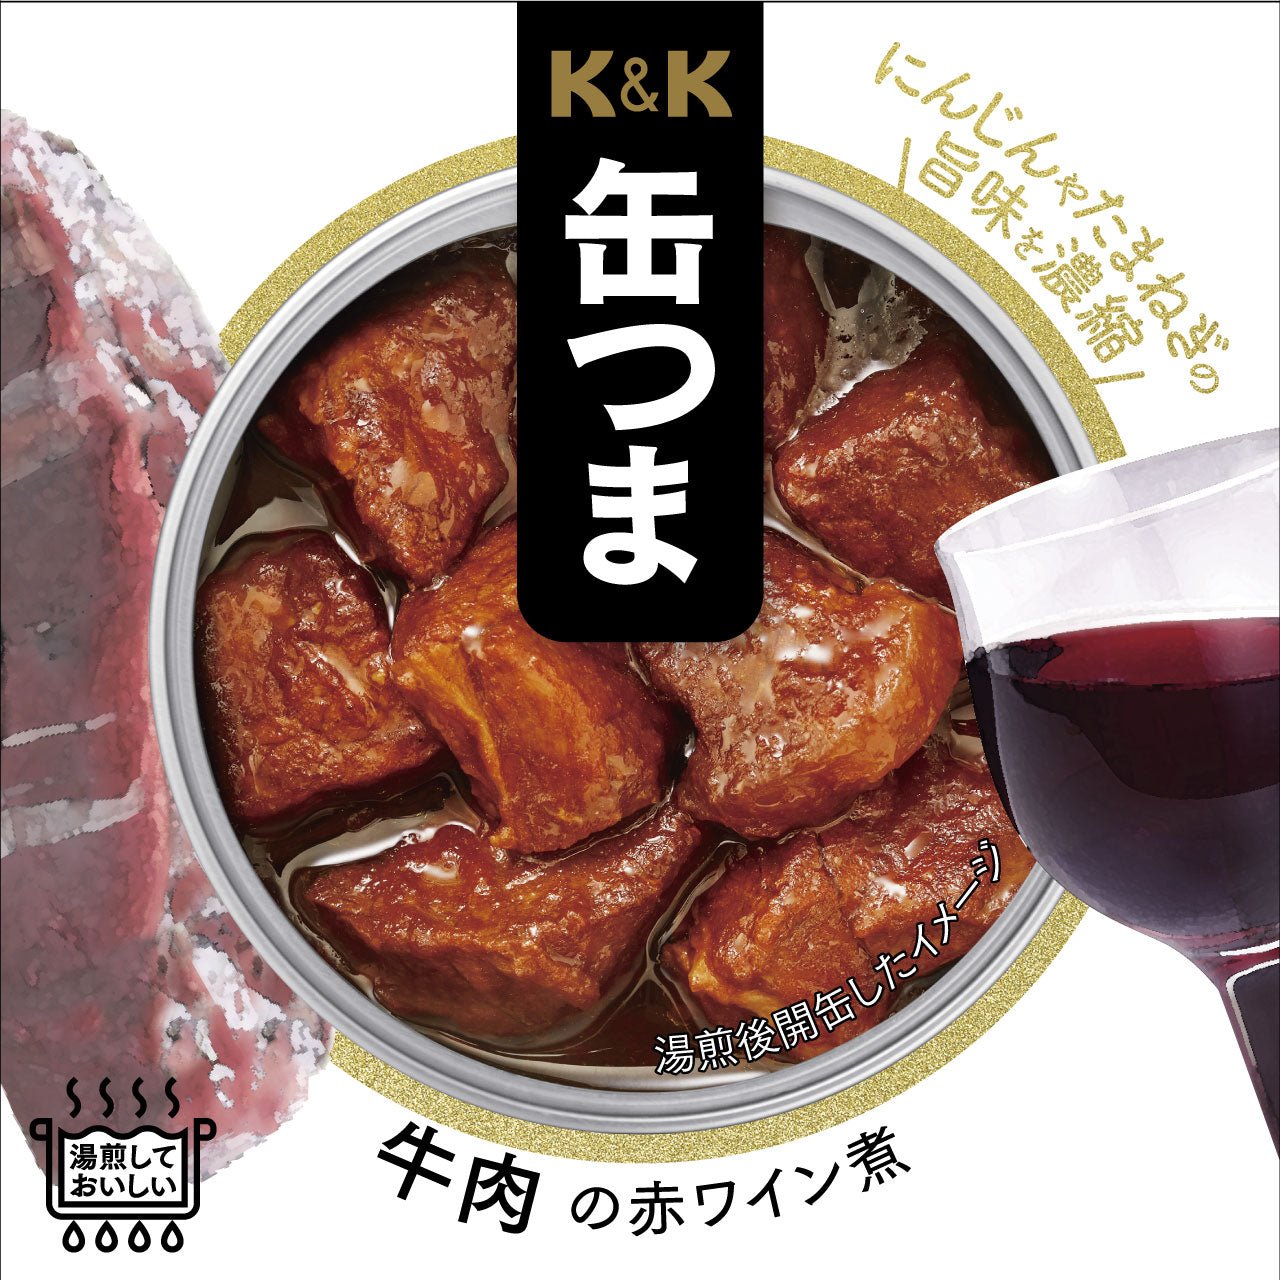 Vin rouge bouilli de bœuf en conserve K&K